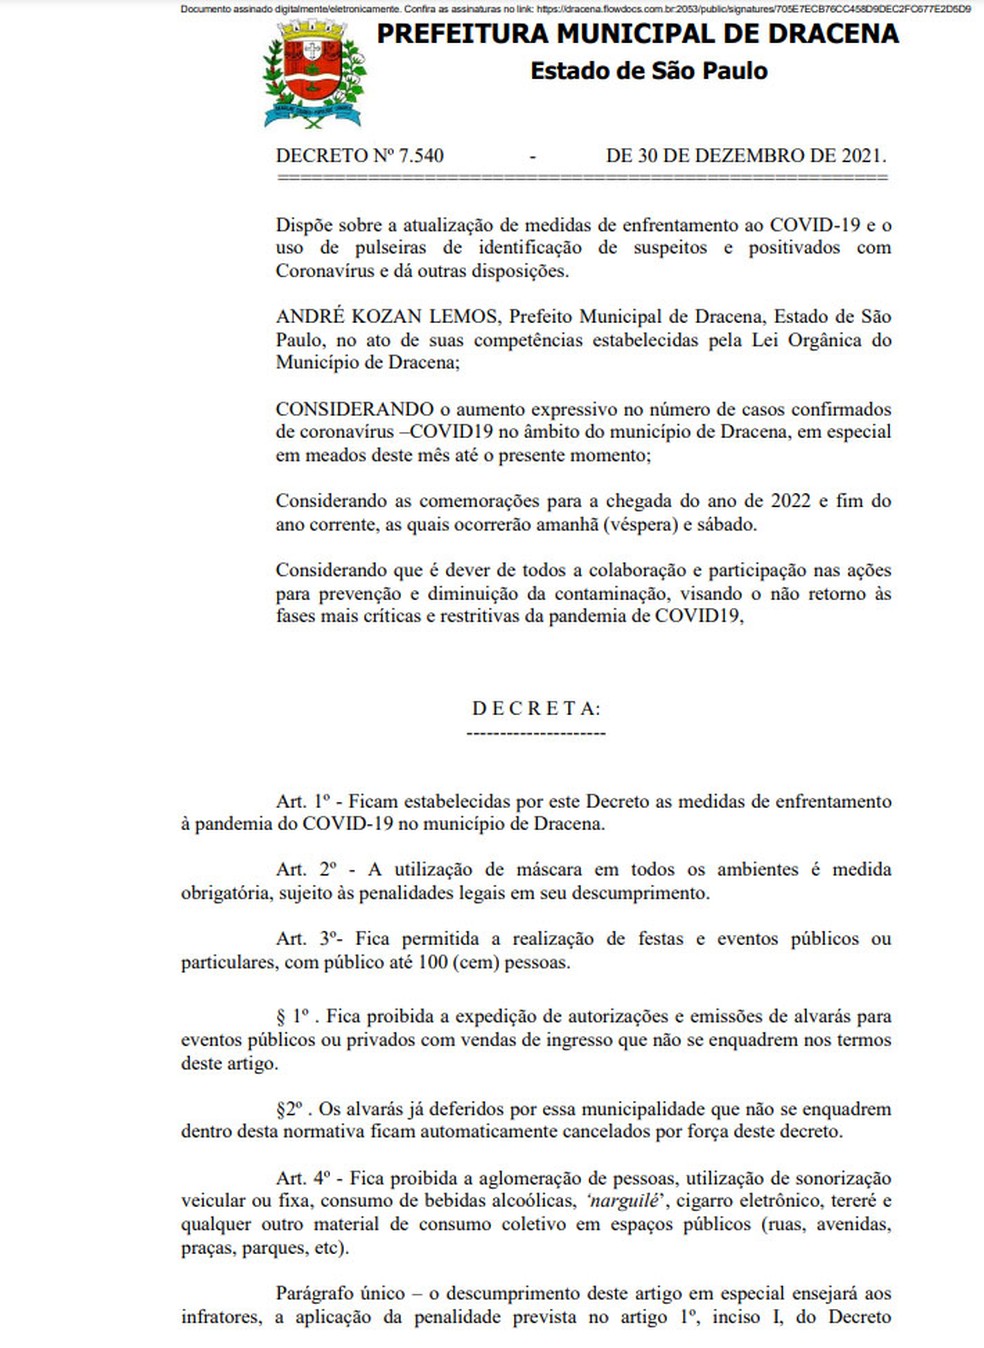 Dracena publicou novo decreto para enfrentamento à Covid-19 — Foto: Reprodução